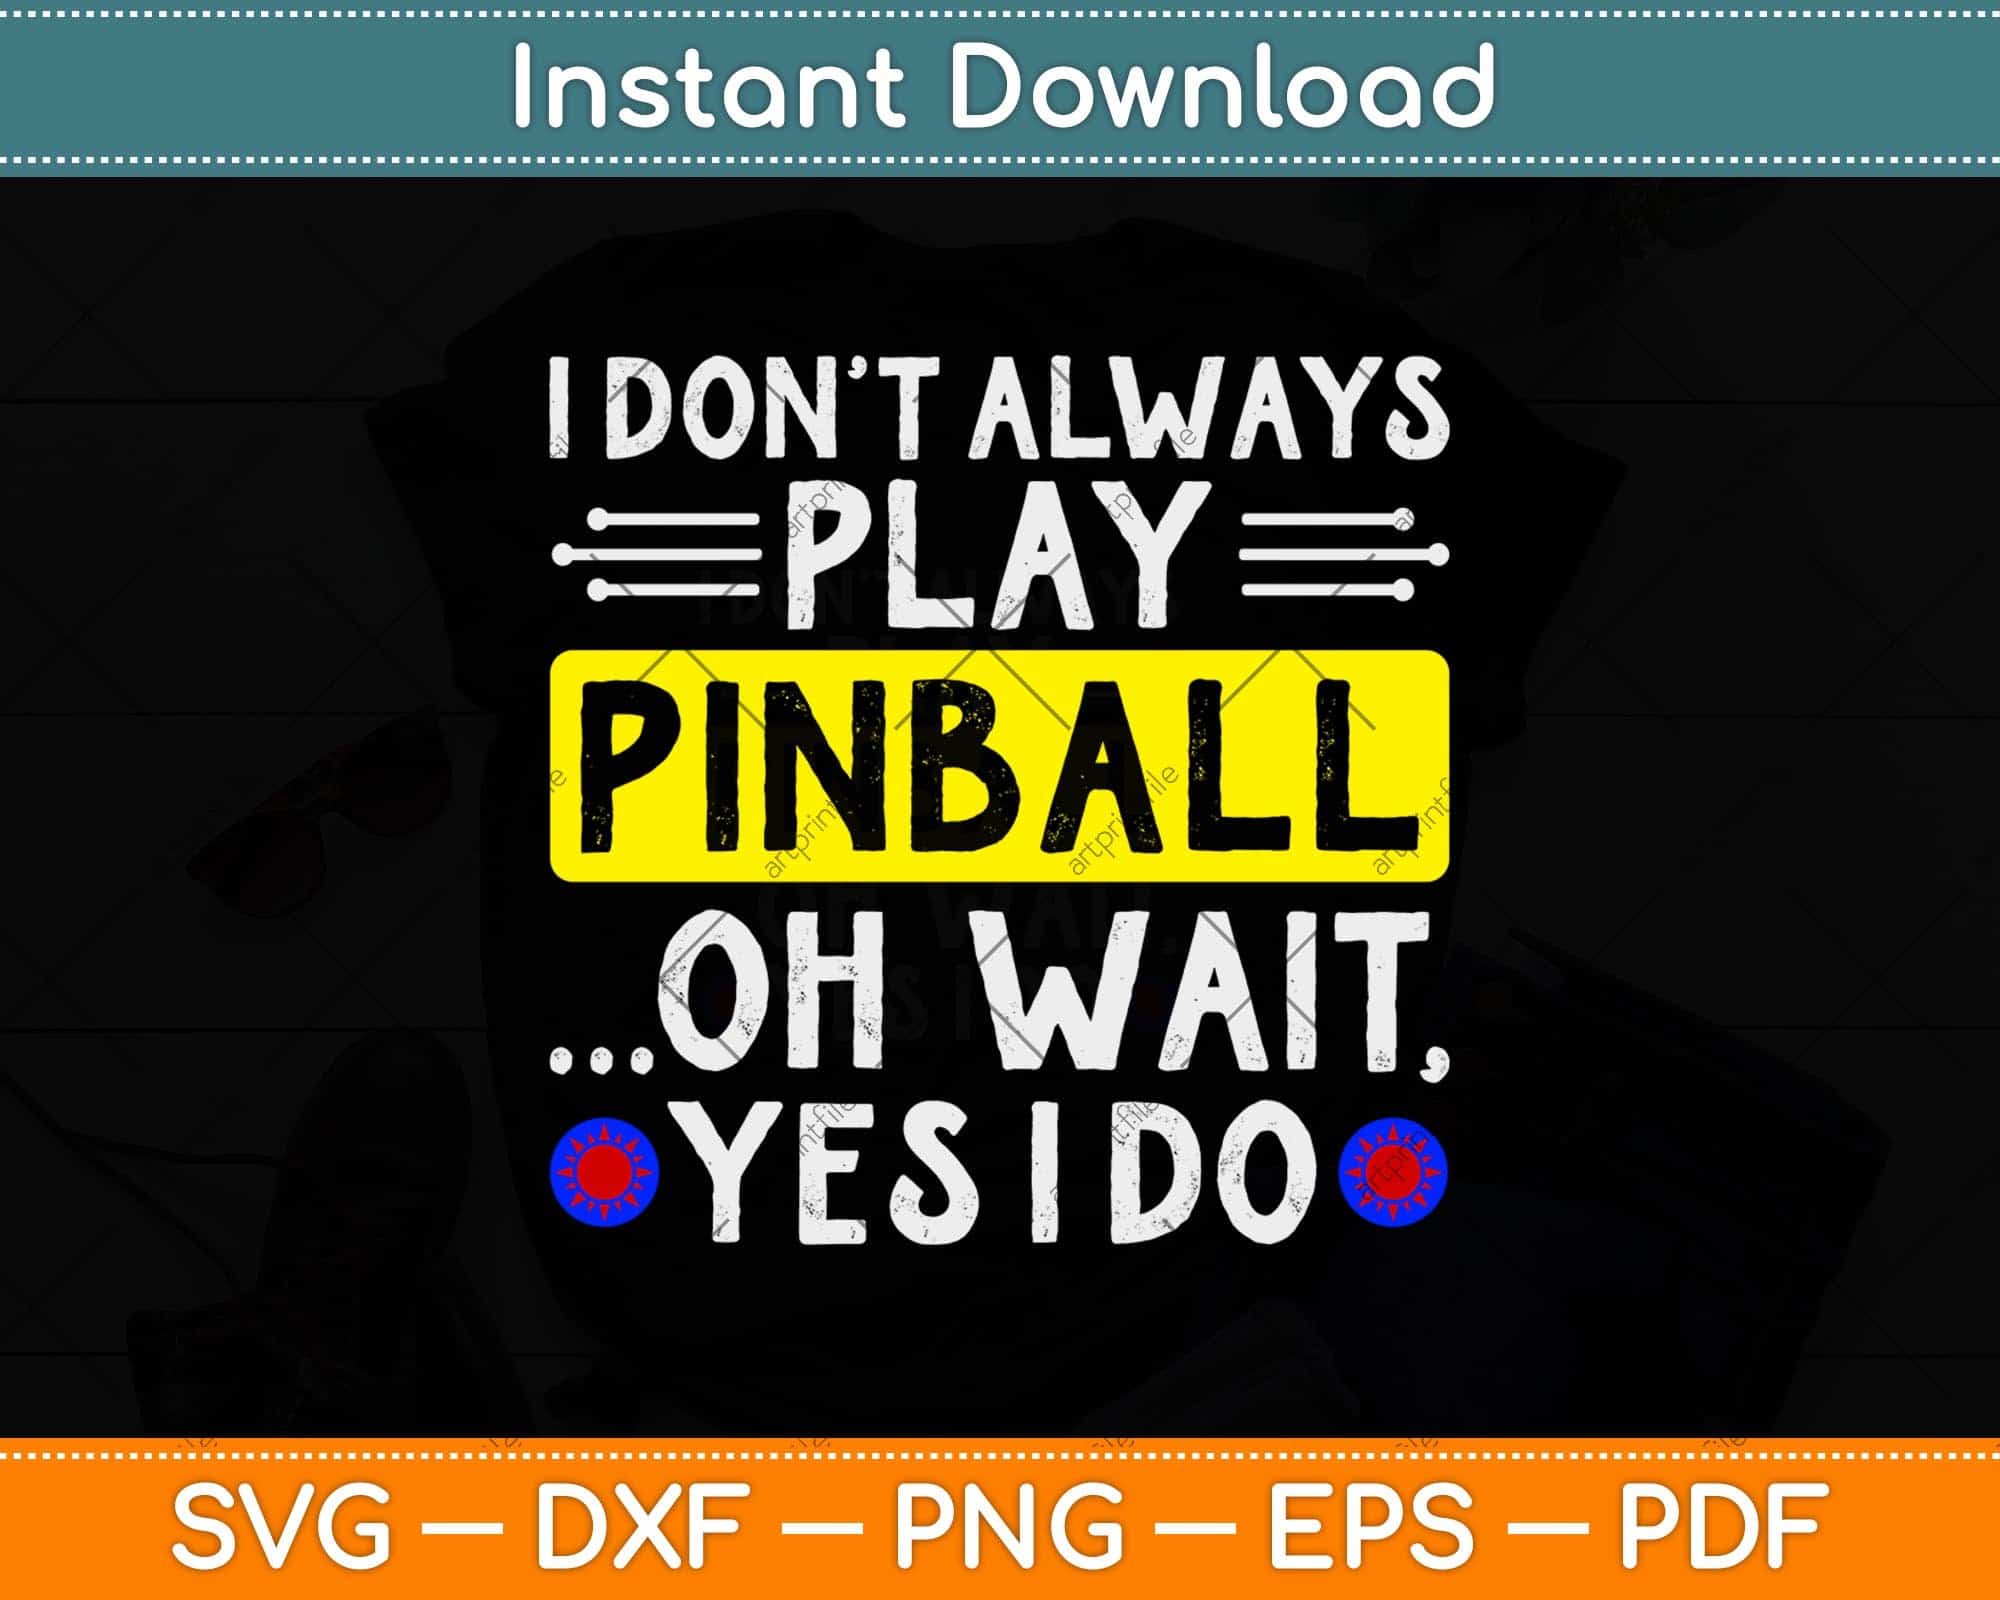 Where to Play Pinball in Ohio Near Me